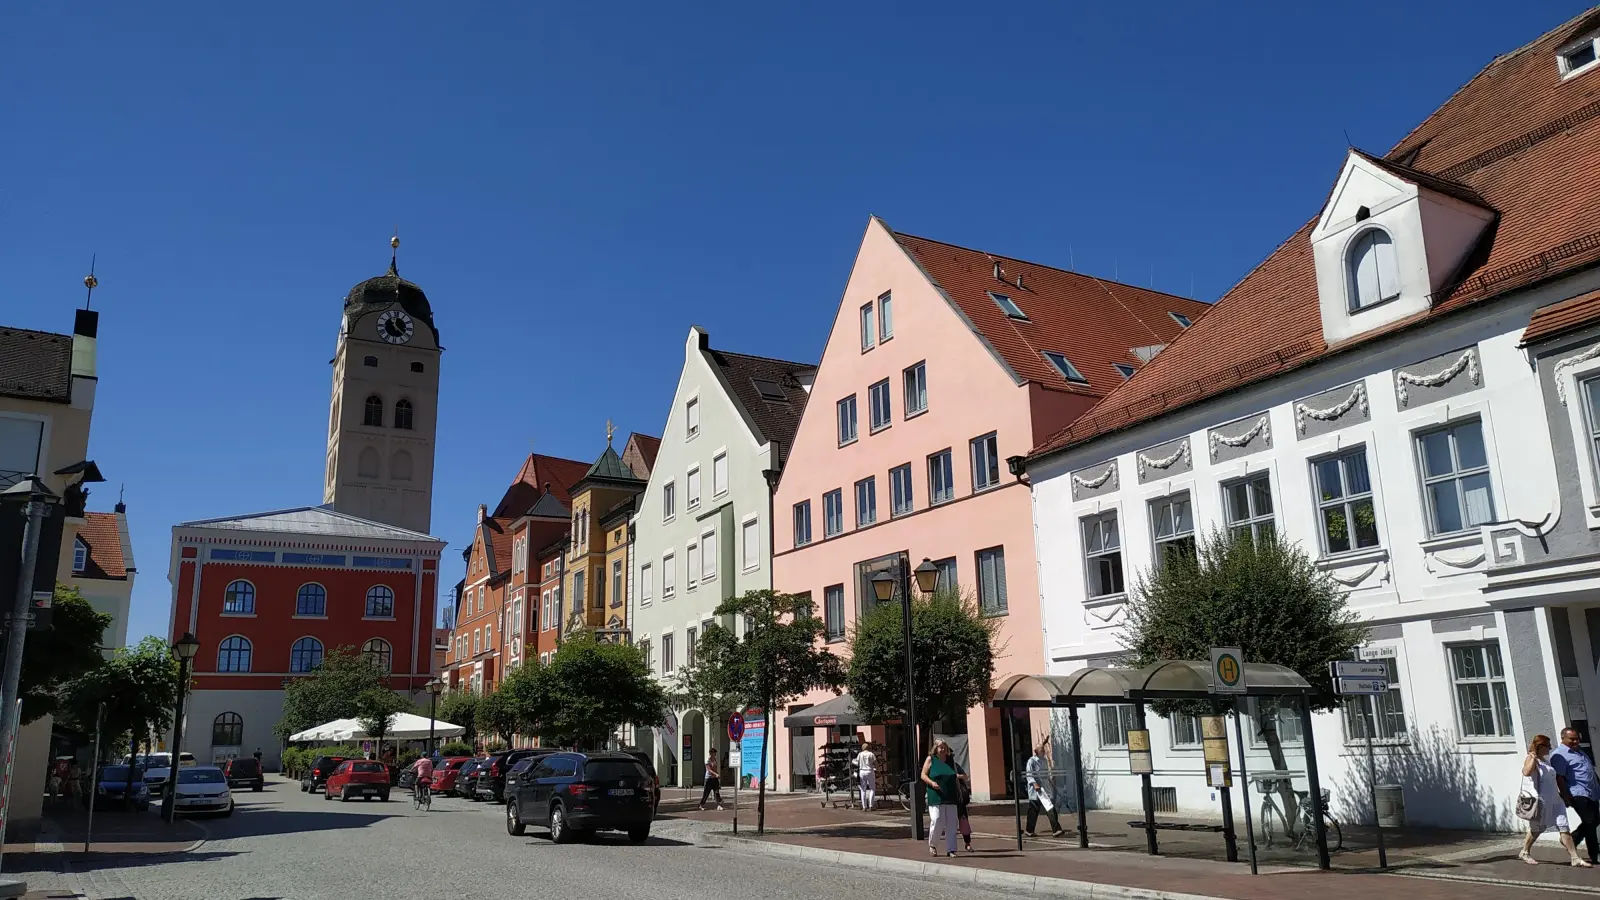 Die Stadt Erding erhält für ihre Altstadt 228.000 Euro aus dem Bund-Länder-Städtebauförderungsprogramm. (Foto: std)